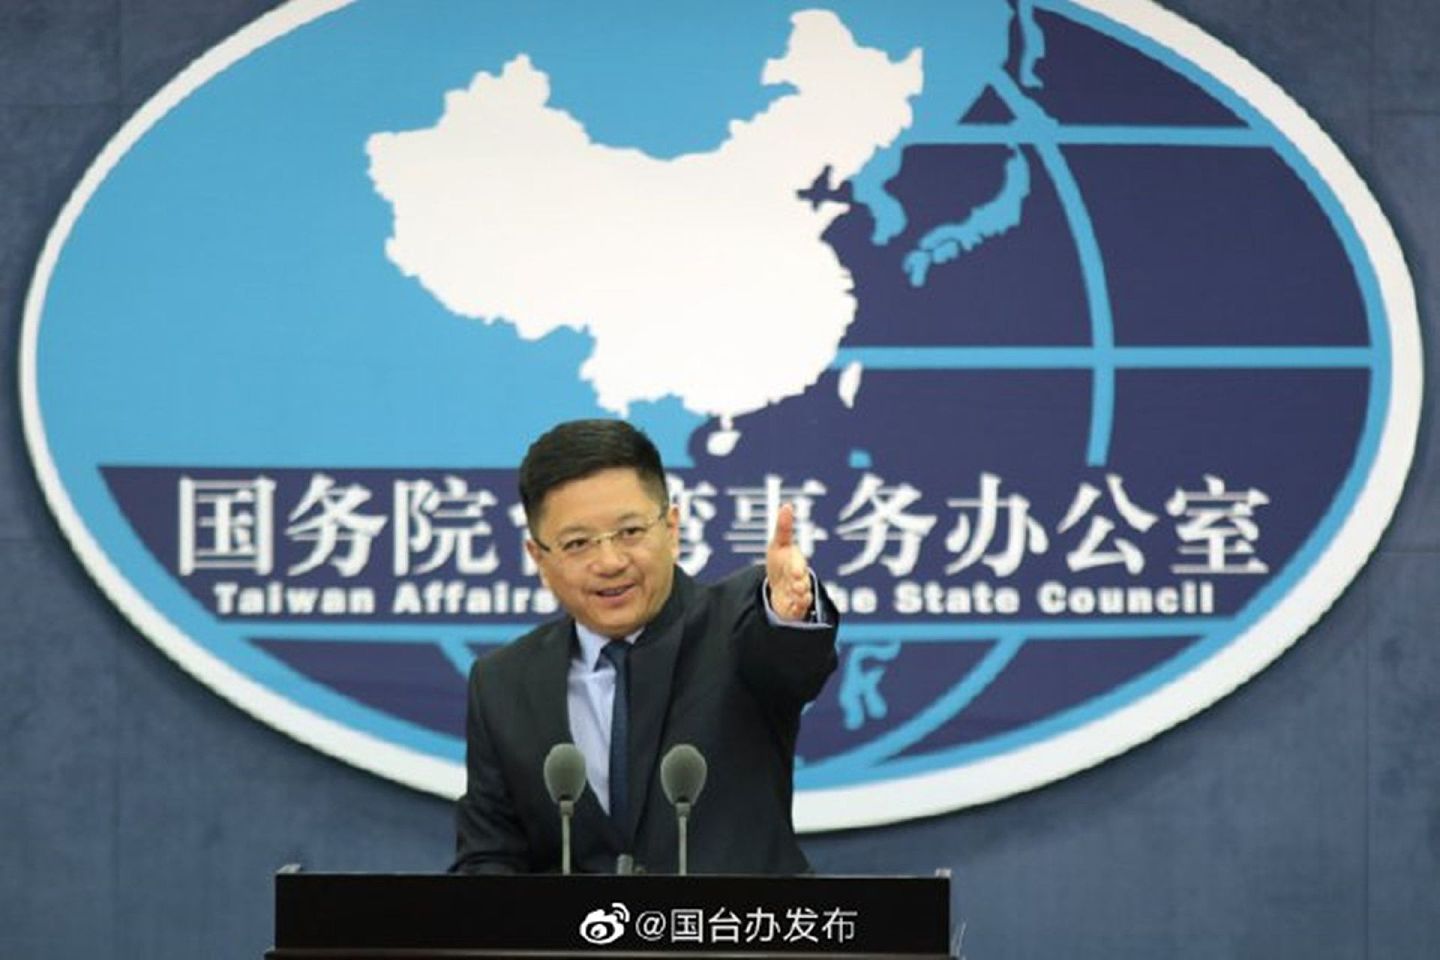 国台办发言人马晓光对于台湾围堵陆资政策表示，台湾从两岸贸易中取得700亿美元顺差，民进党政府的举动只会断送台湾民众的发展机遇。（微博＠国台办发布）